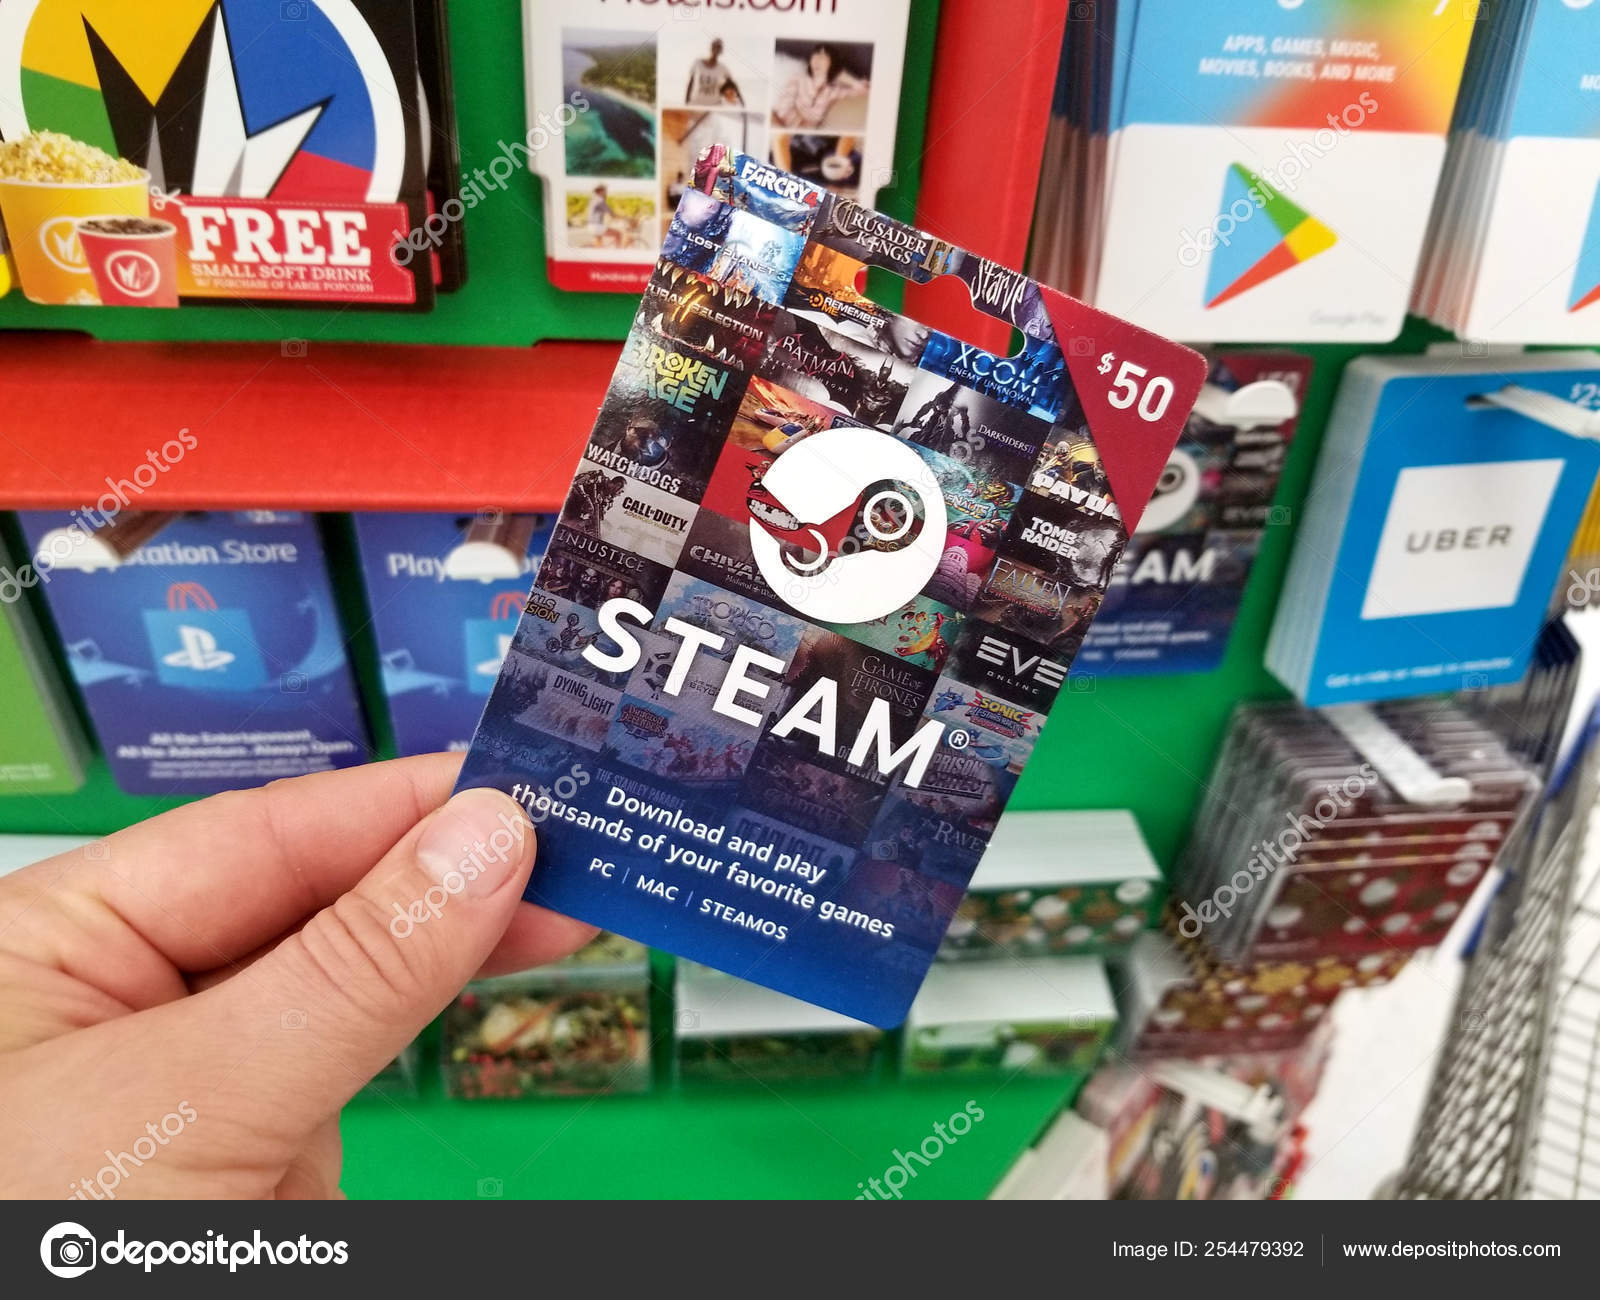 steam 50 gift card free Kenya Jernigan